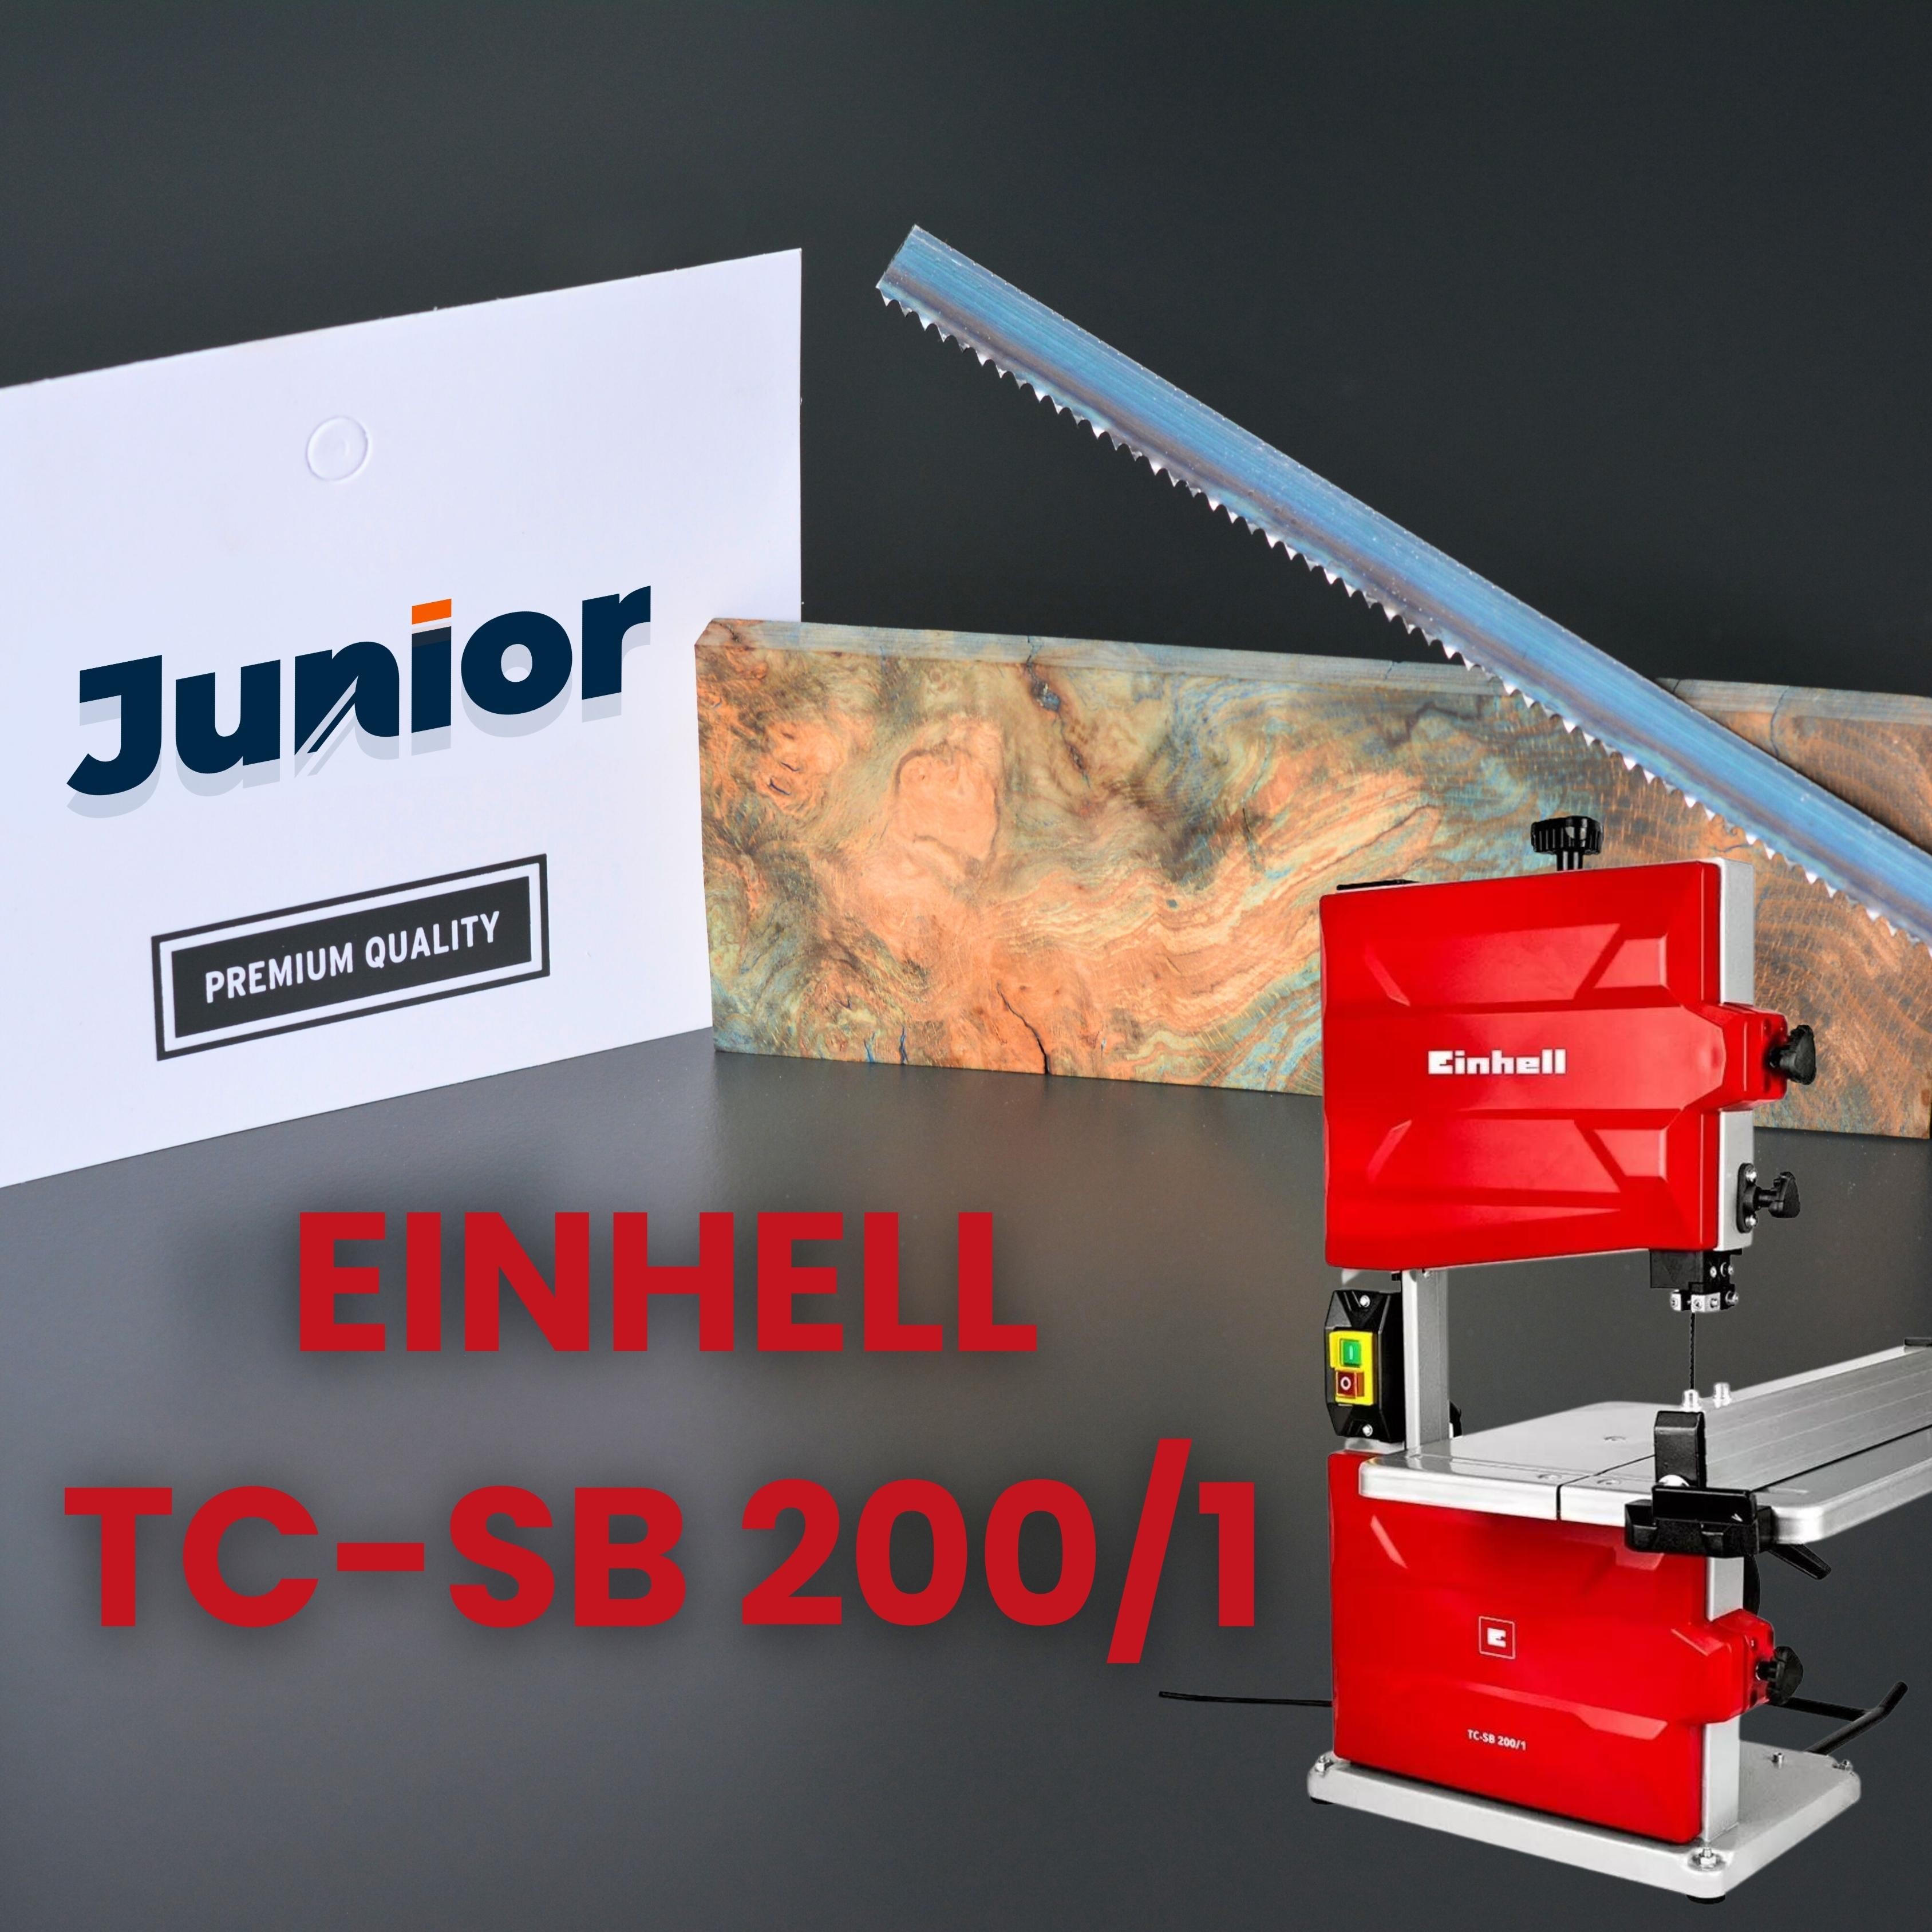 Einhell Tc-sb 200/1 Karbon Şerit Testere Bıçağı (1400mm)